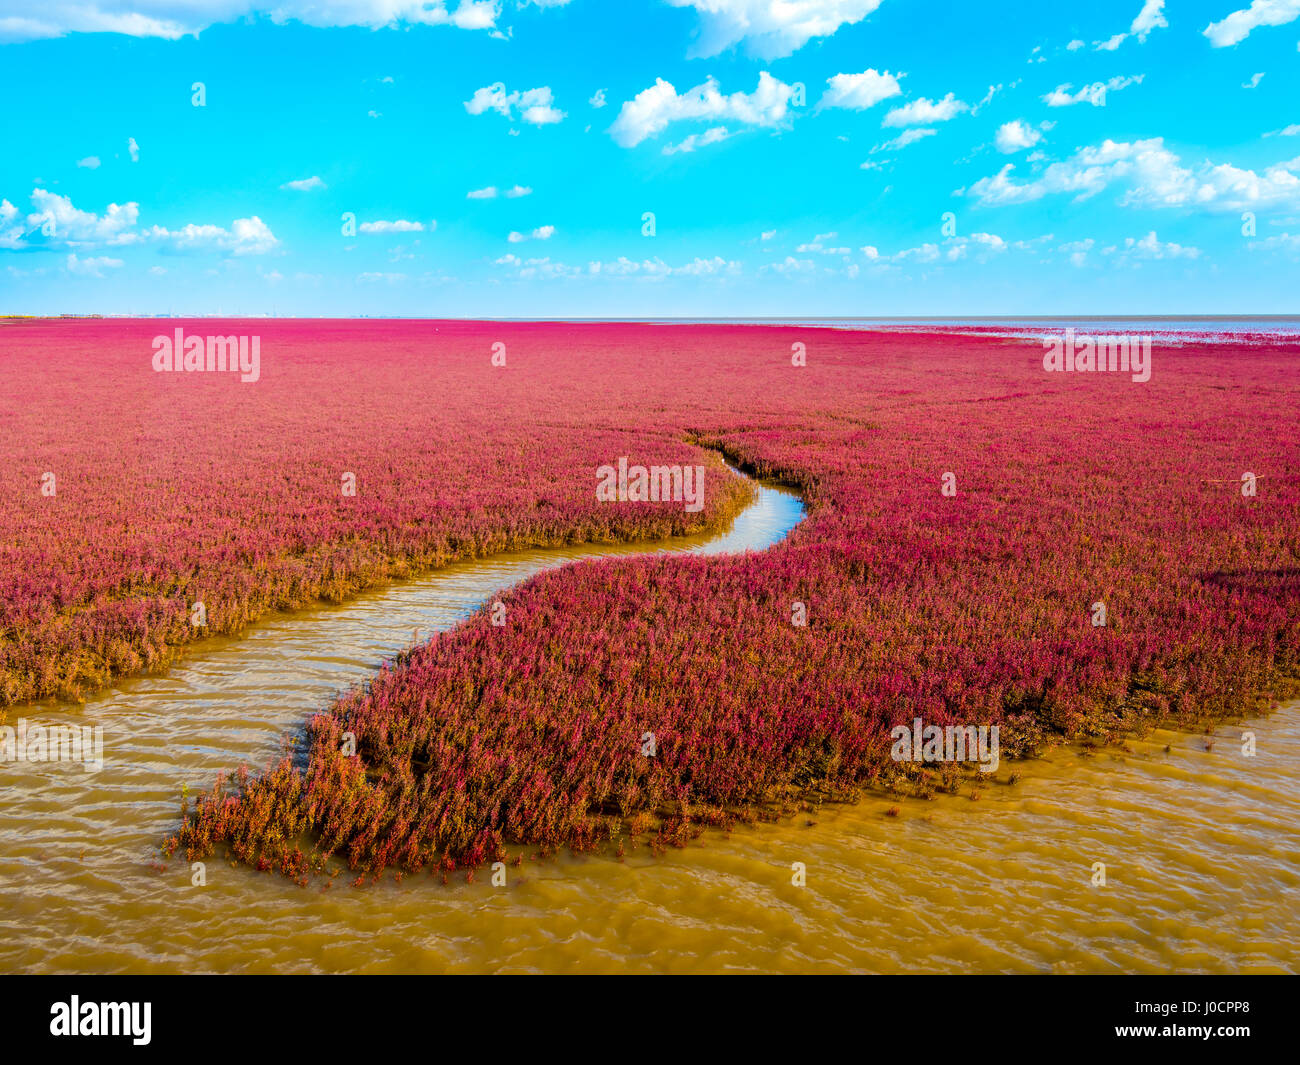 La plage rouge, situé dans le Delta du Liaohe à 30km au sud ouest de Troisdorf, Liaoning, Chine. La plage est une zone marécageuse d'importance énorme pour birdlife Banque D'Images